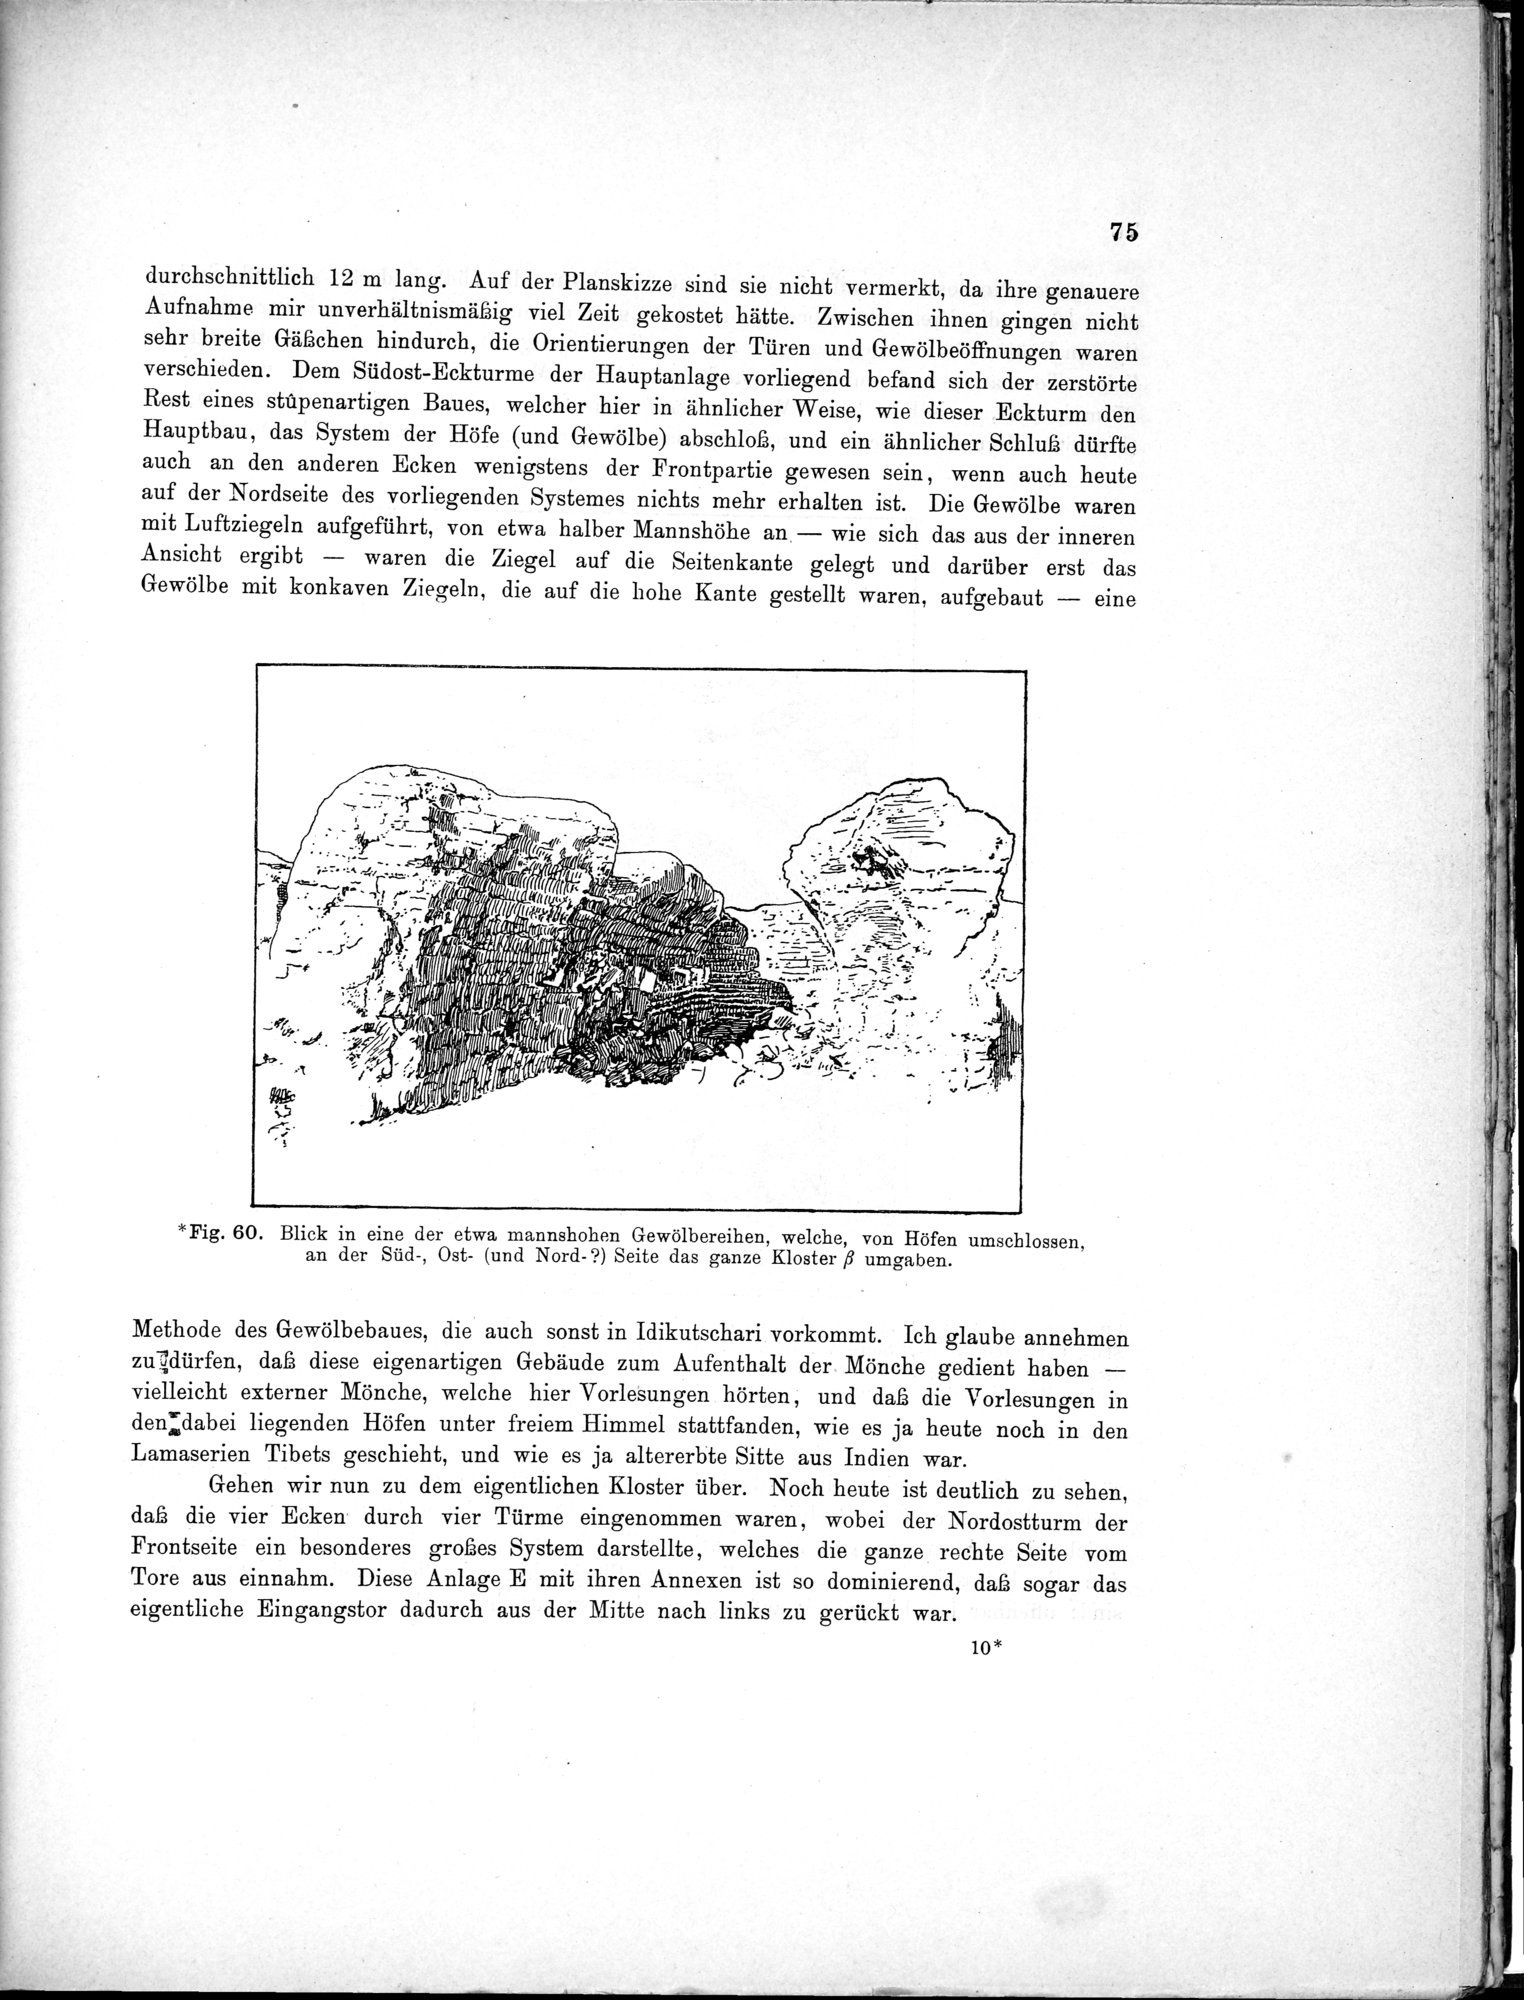 Bericht über archäologische Arbeiten in Idikutschari und Umgebung im Winter 1902-1903 : vol.1 / Page 85 (Grayscale High Resolution Image)